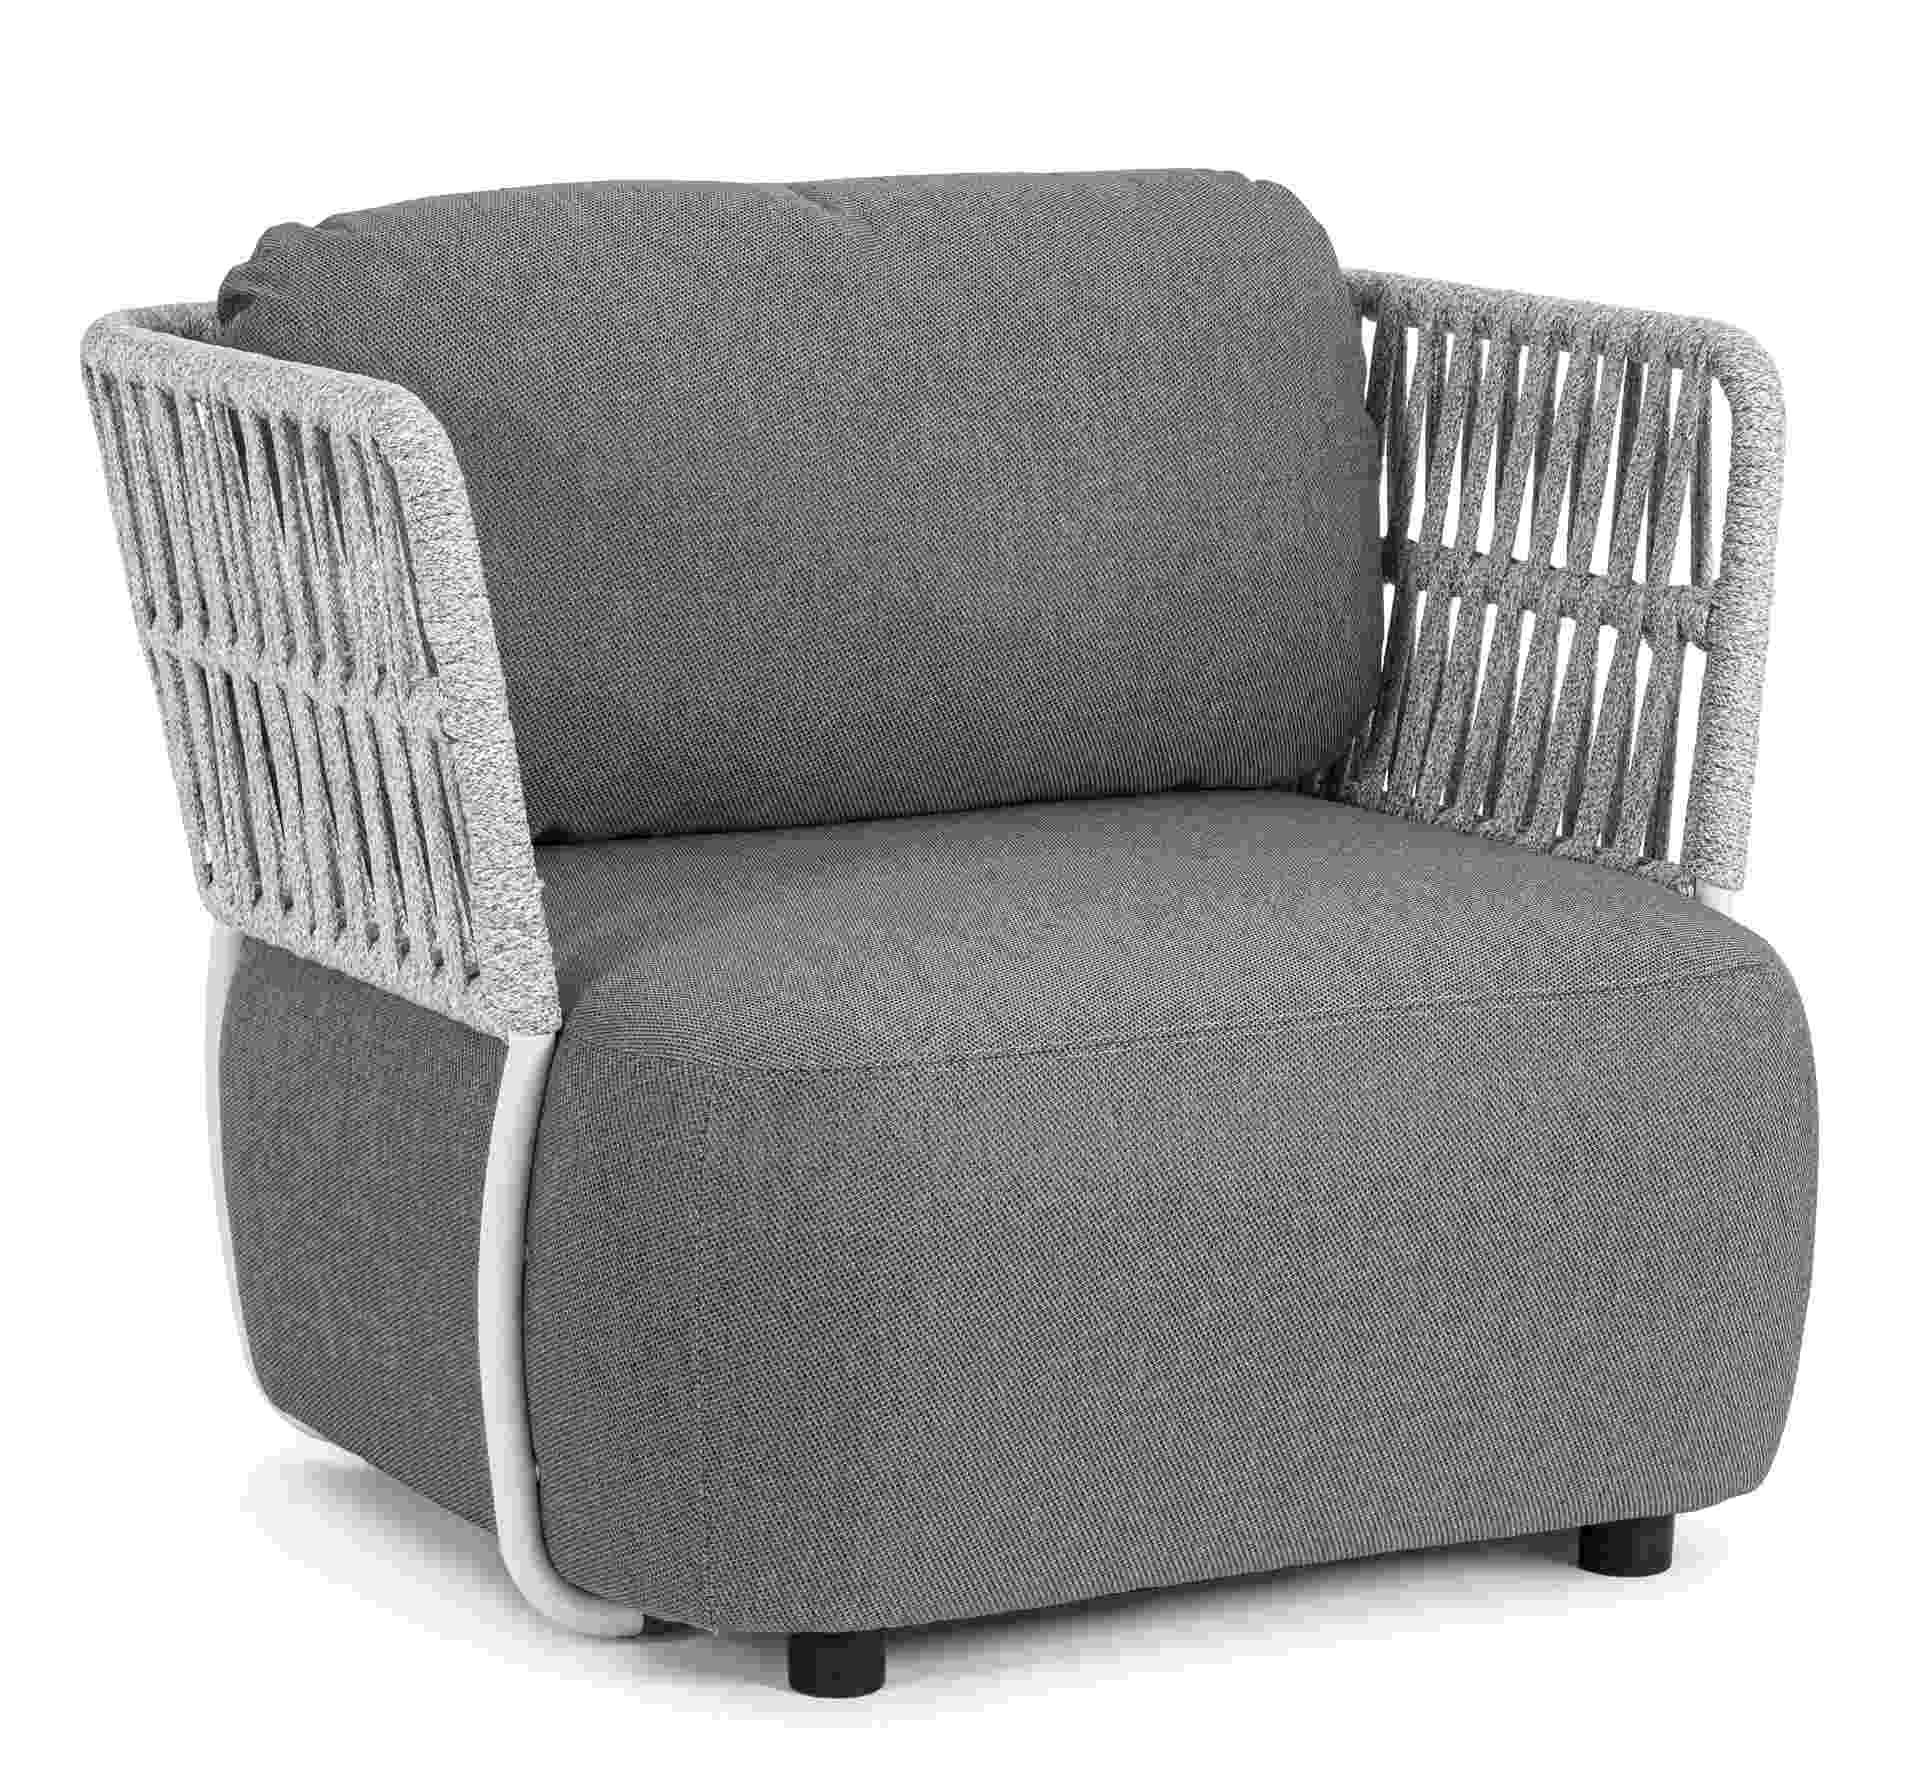 Der Gartensessel Palmer überzeugt mit seinem modernen Design. Gefertigt wurde er aus Olefin-Stoff, welcher einen grauen Farbton besitzt. Das Gestell ist aus Aluminium und hat eine weiße Farbe. Der Sessel verfügt über eine Sitzhöhe von 40 cm und ist für de